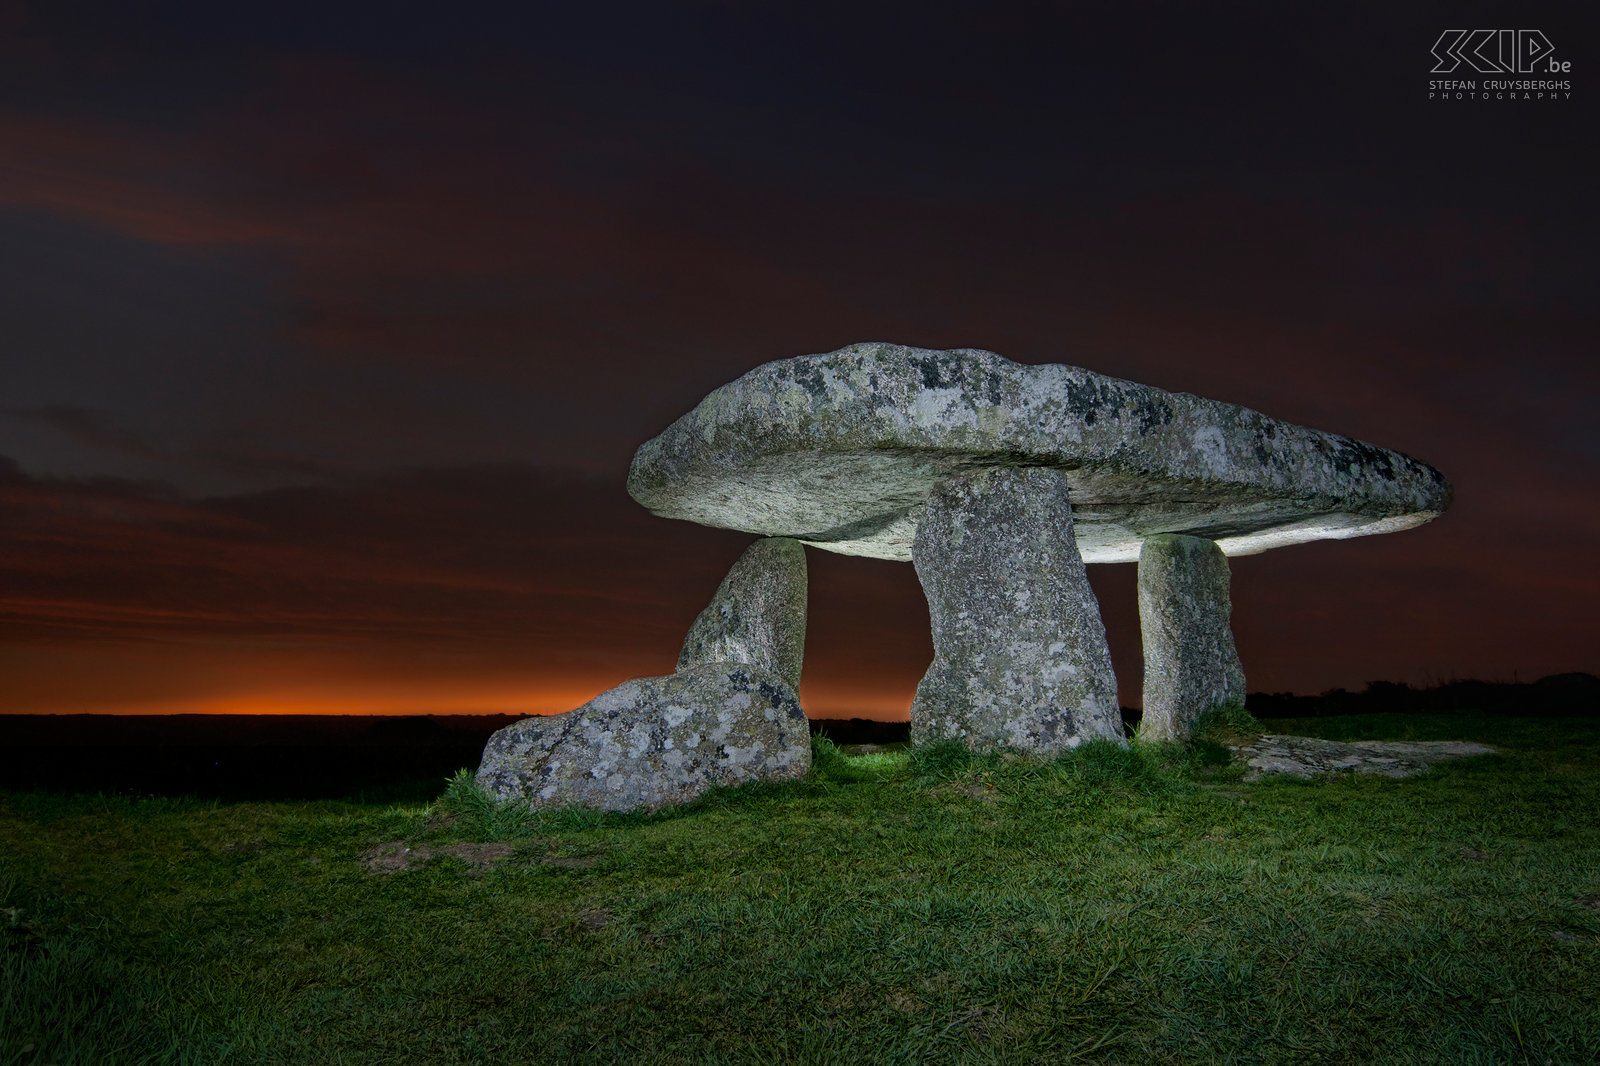 Lanyon Quoit Het meest bekende hunebed/dolmen in Cornwall is Lanyon Quoit. Deze foto is mijn eerste experiment om ’s nachts met lange sluitertijden te werken en manueel te belichten met flits en zaklamp. Het koste heel wat tijd maar ik ben vrij tevreden met het eindelijke resultaat. Stefan Cruysberghs